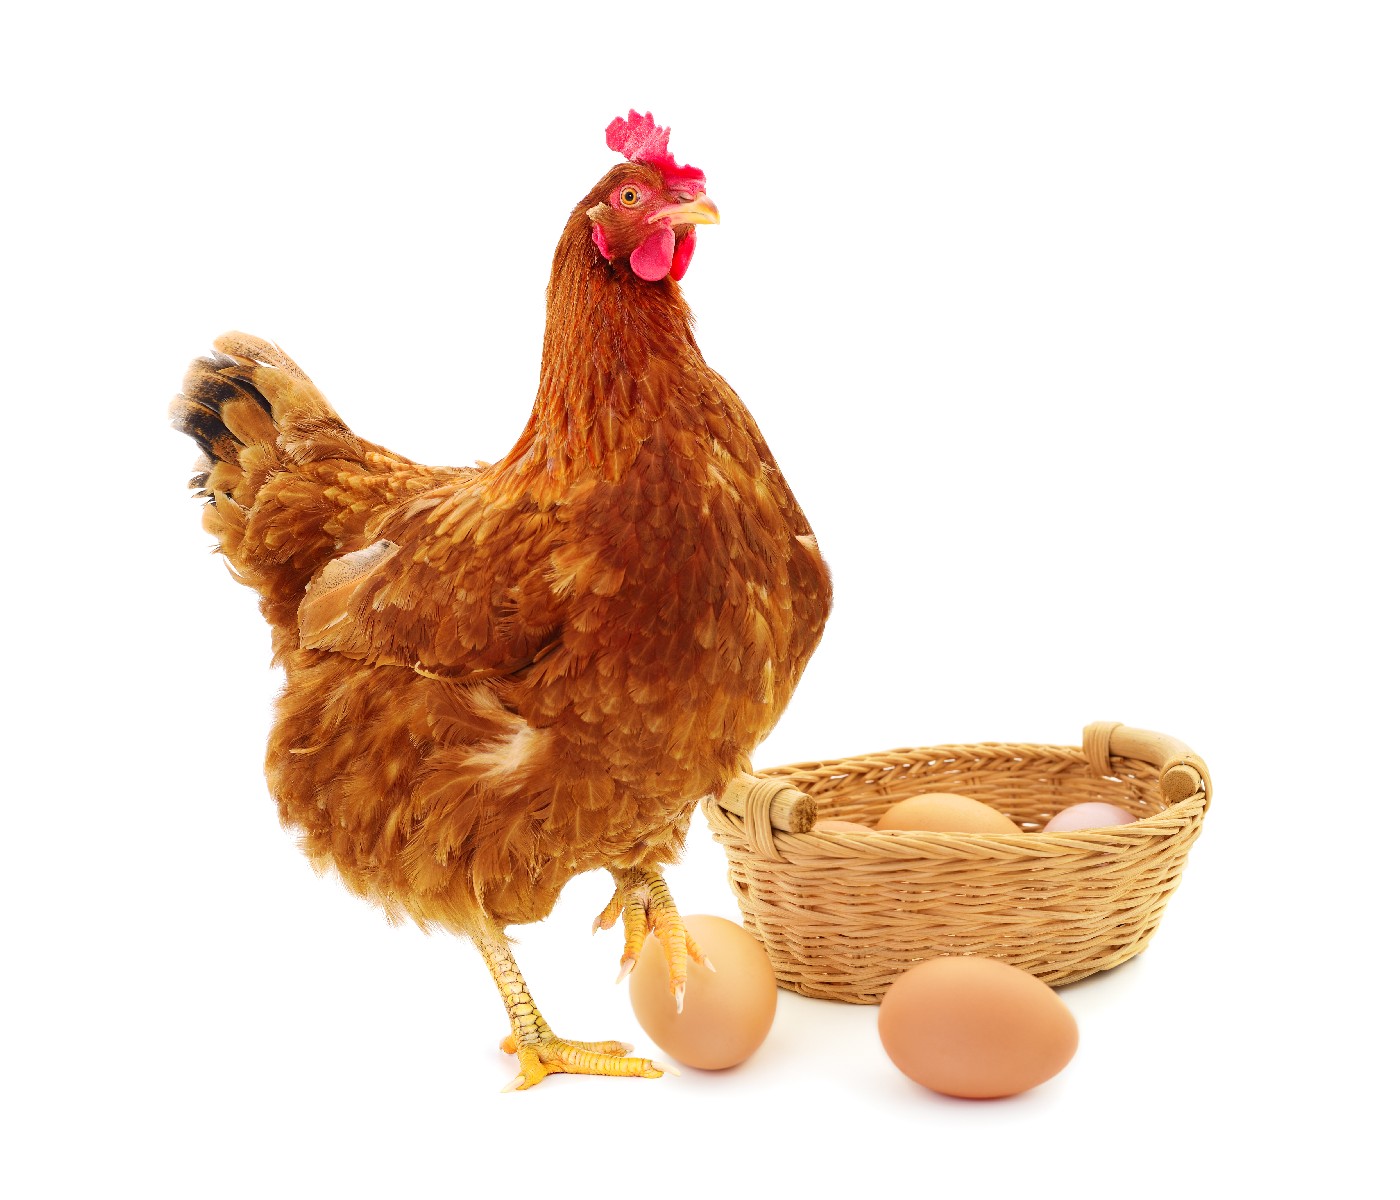 ¿Cómo obtener mayor producción de huevos usando modelos matemáticos?